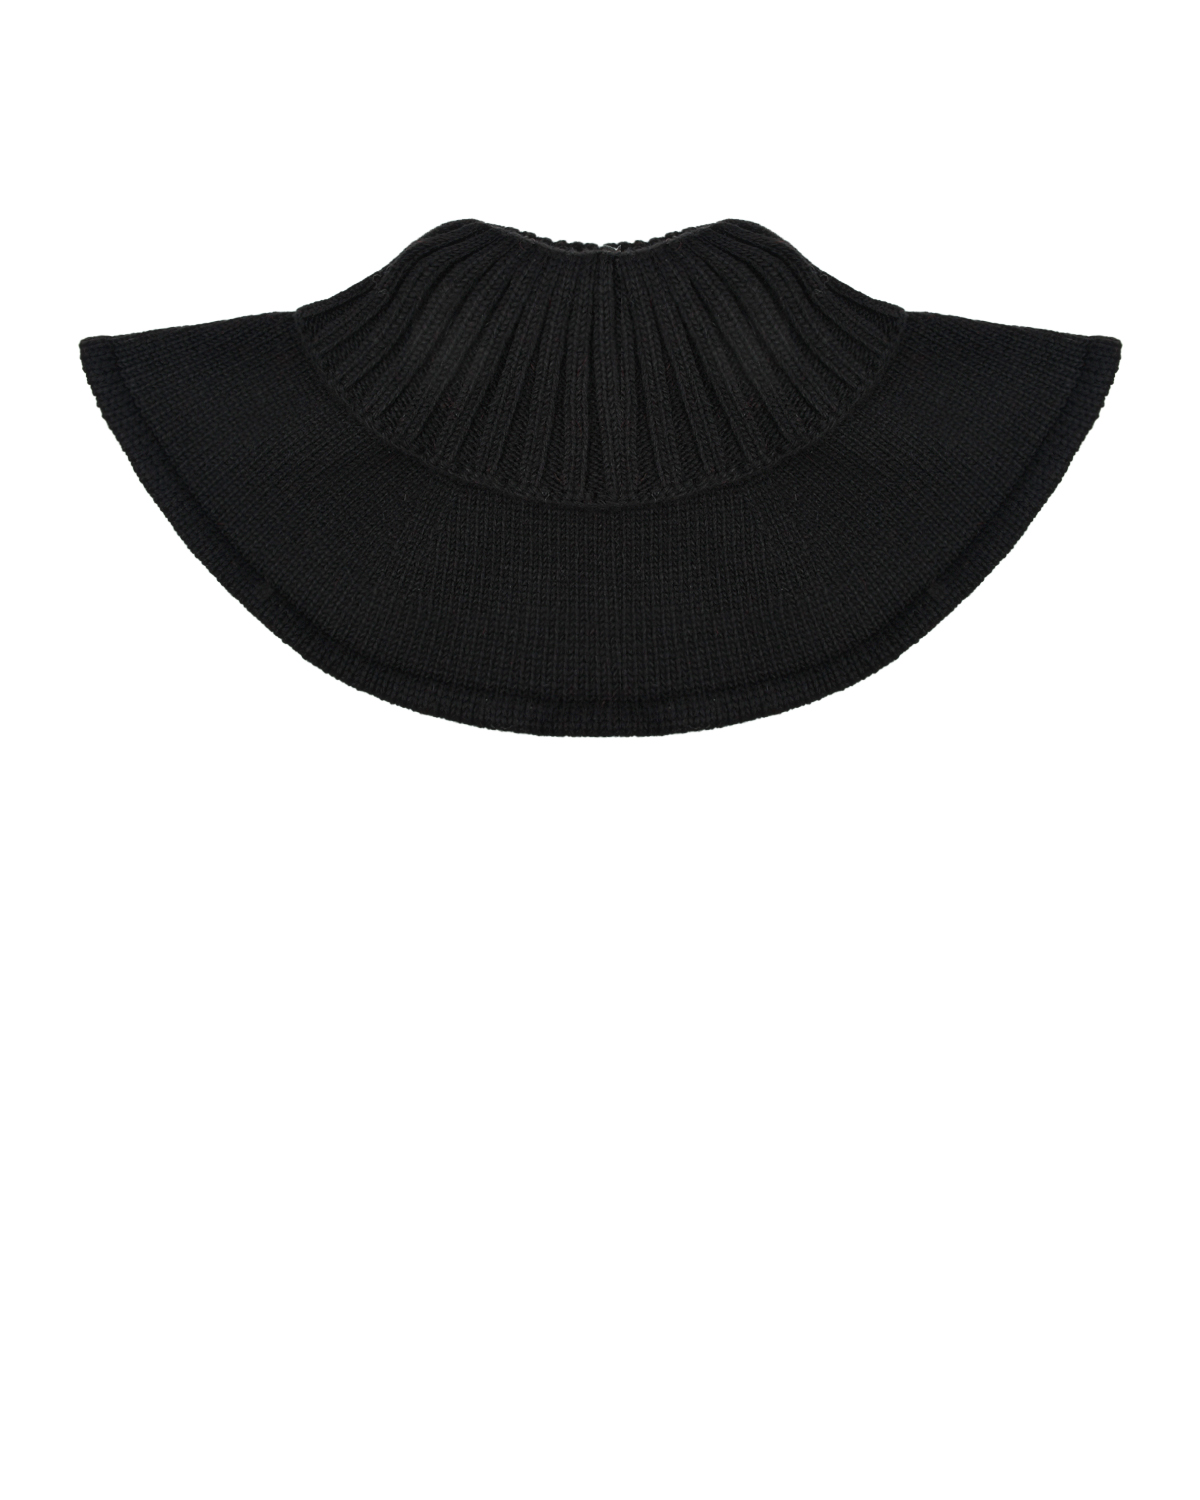 Черный вязаный шарф-горло Chobi детский, размер unica